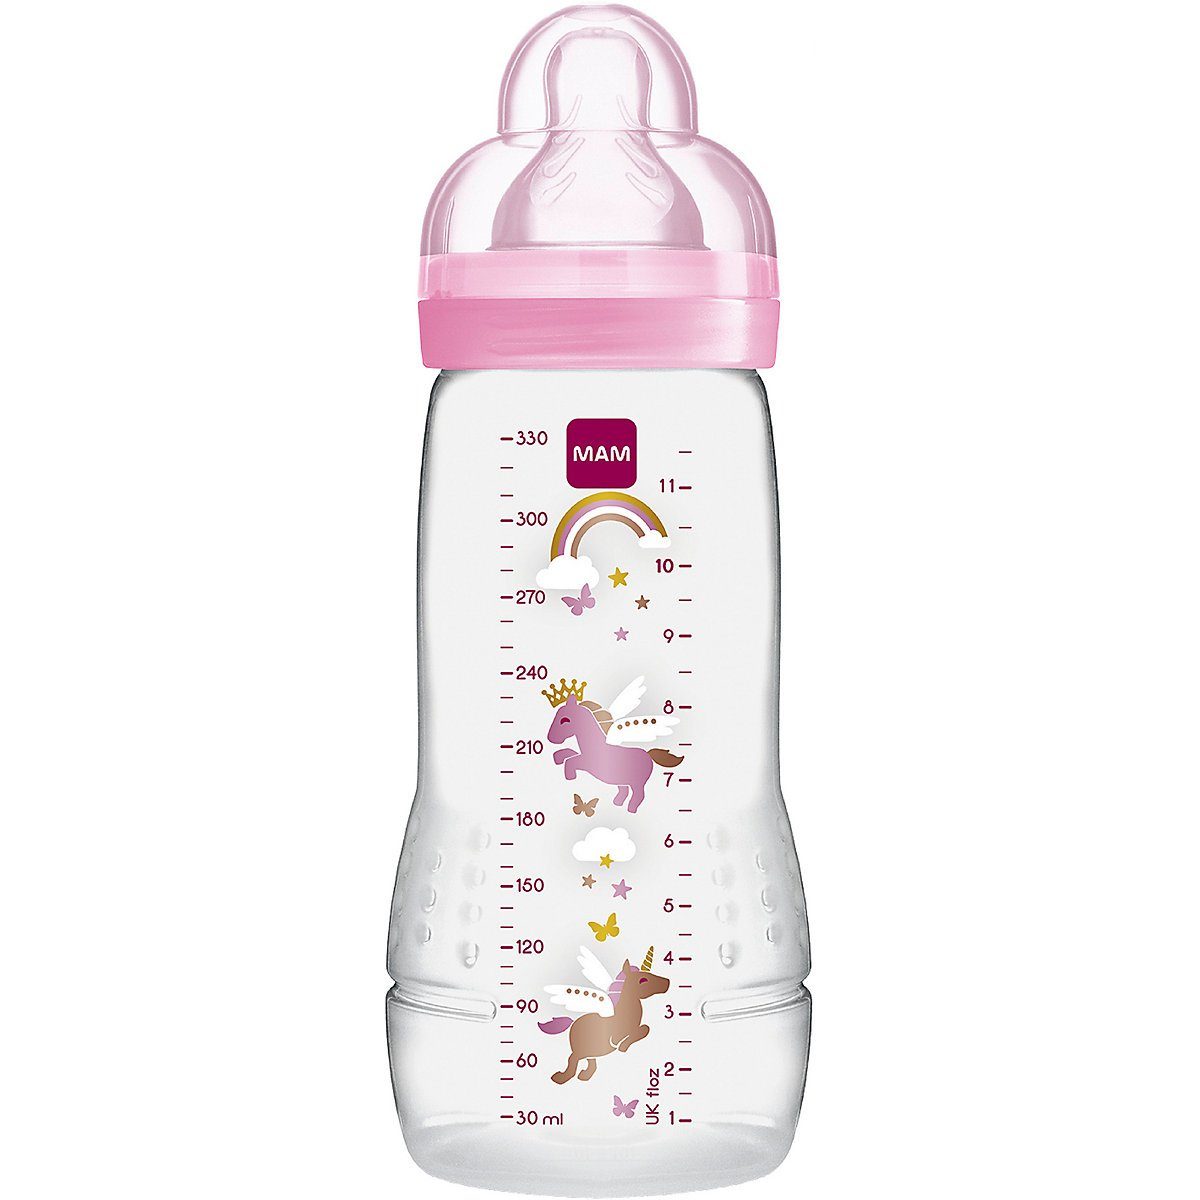 Kinder Babyernährung MAM Babyflasche Weithals Flasche Easy Active, PP, 330 ml,